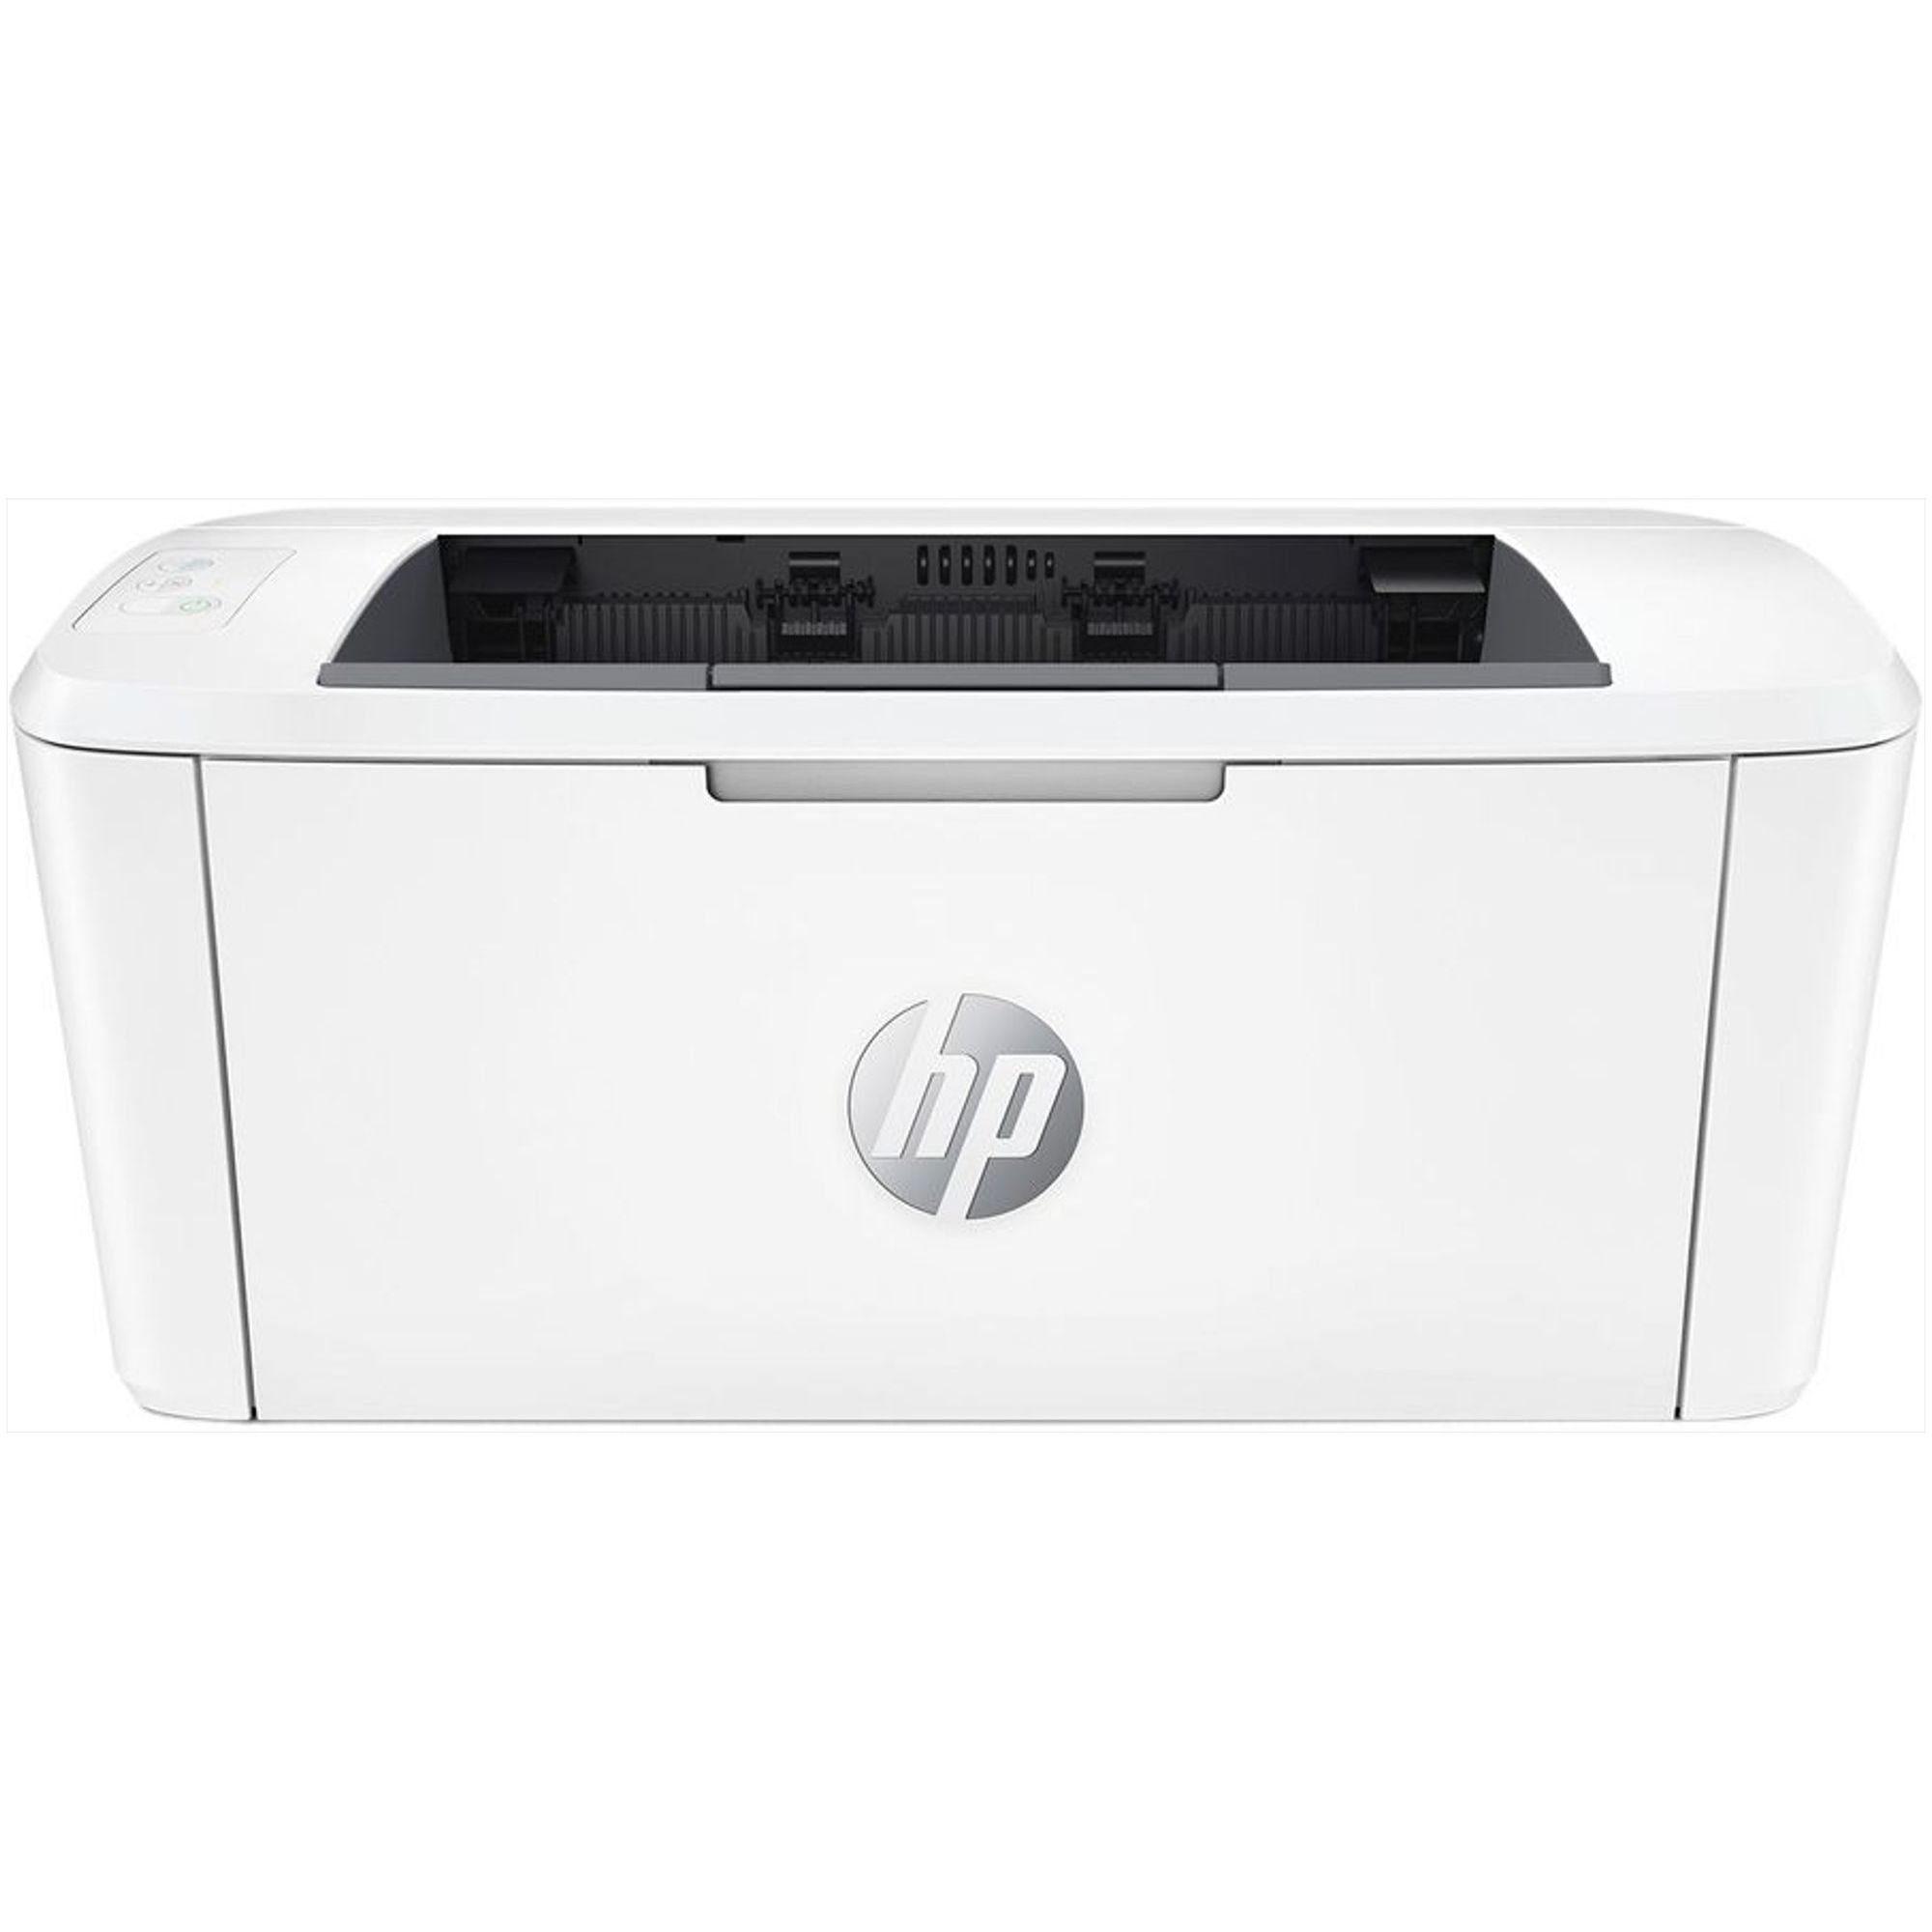 Принтер HP LaserJet M111w 7MD68A 194850677113 цена и фото